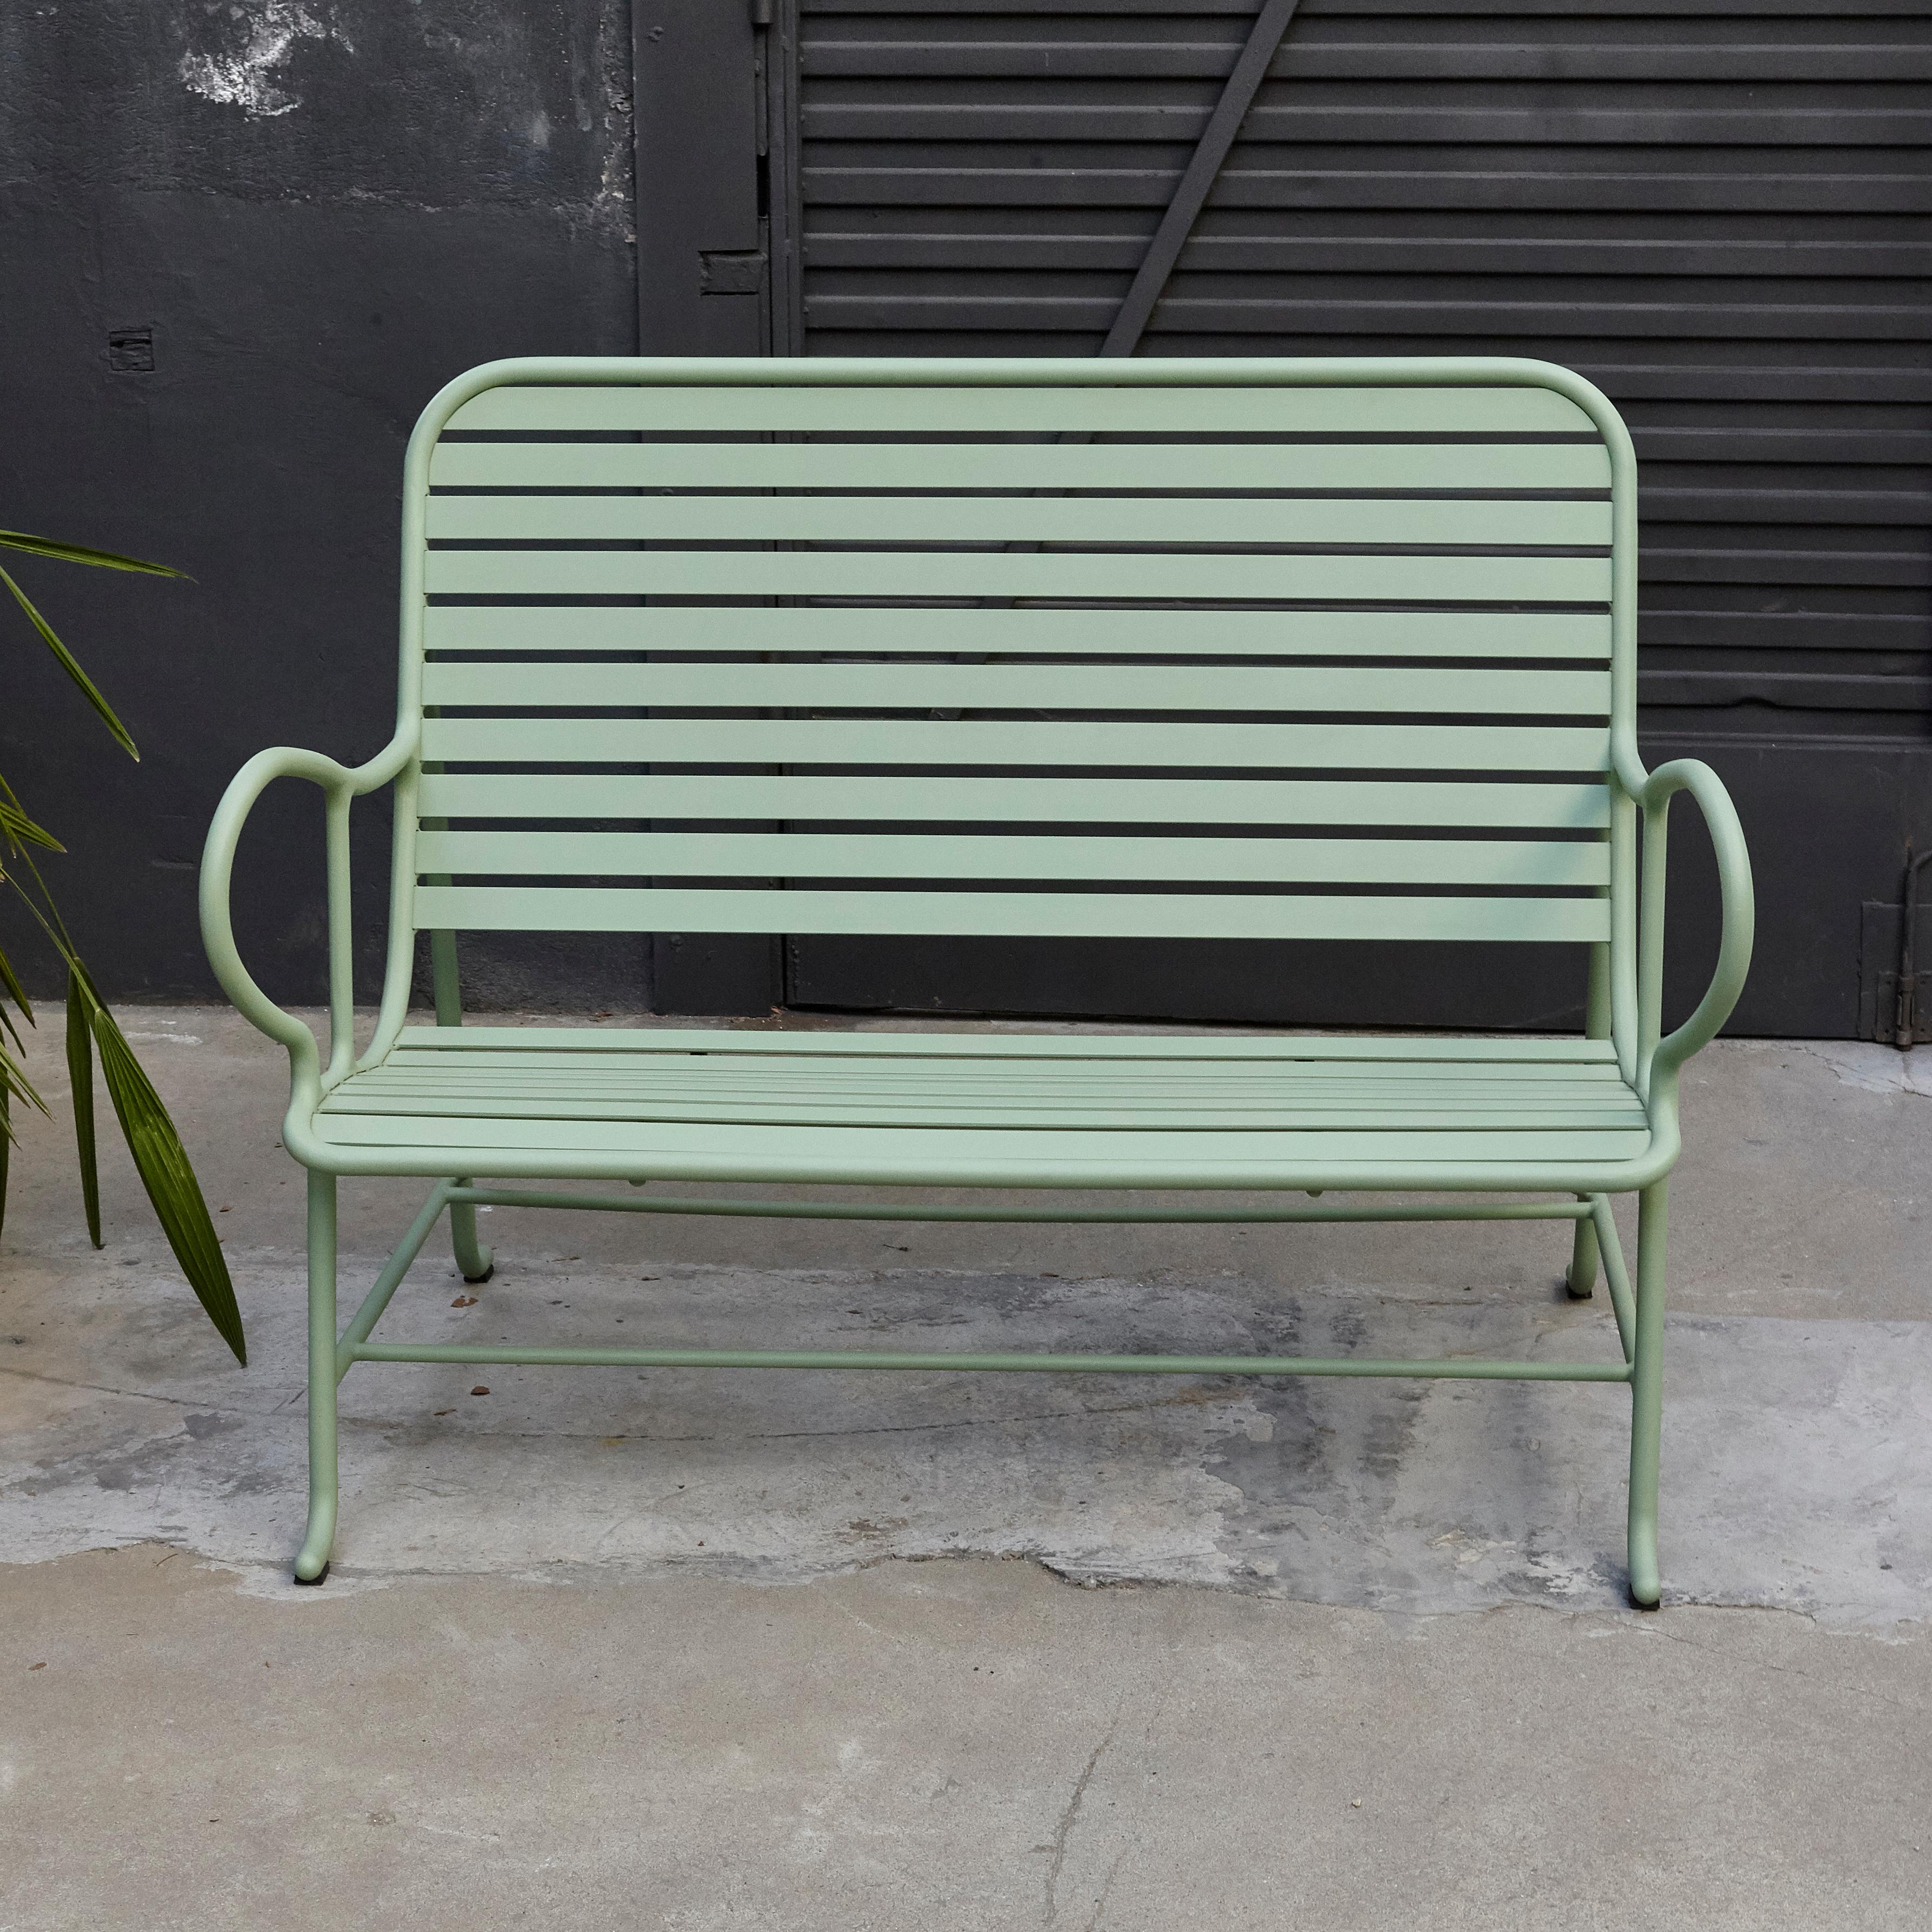 Spanish Jaime Hayon Contemporary Green Sculptural 'Gardenias' Outdoor Bench for BD